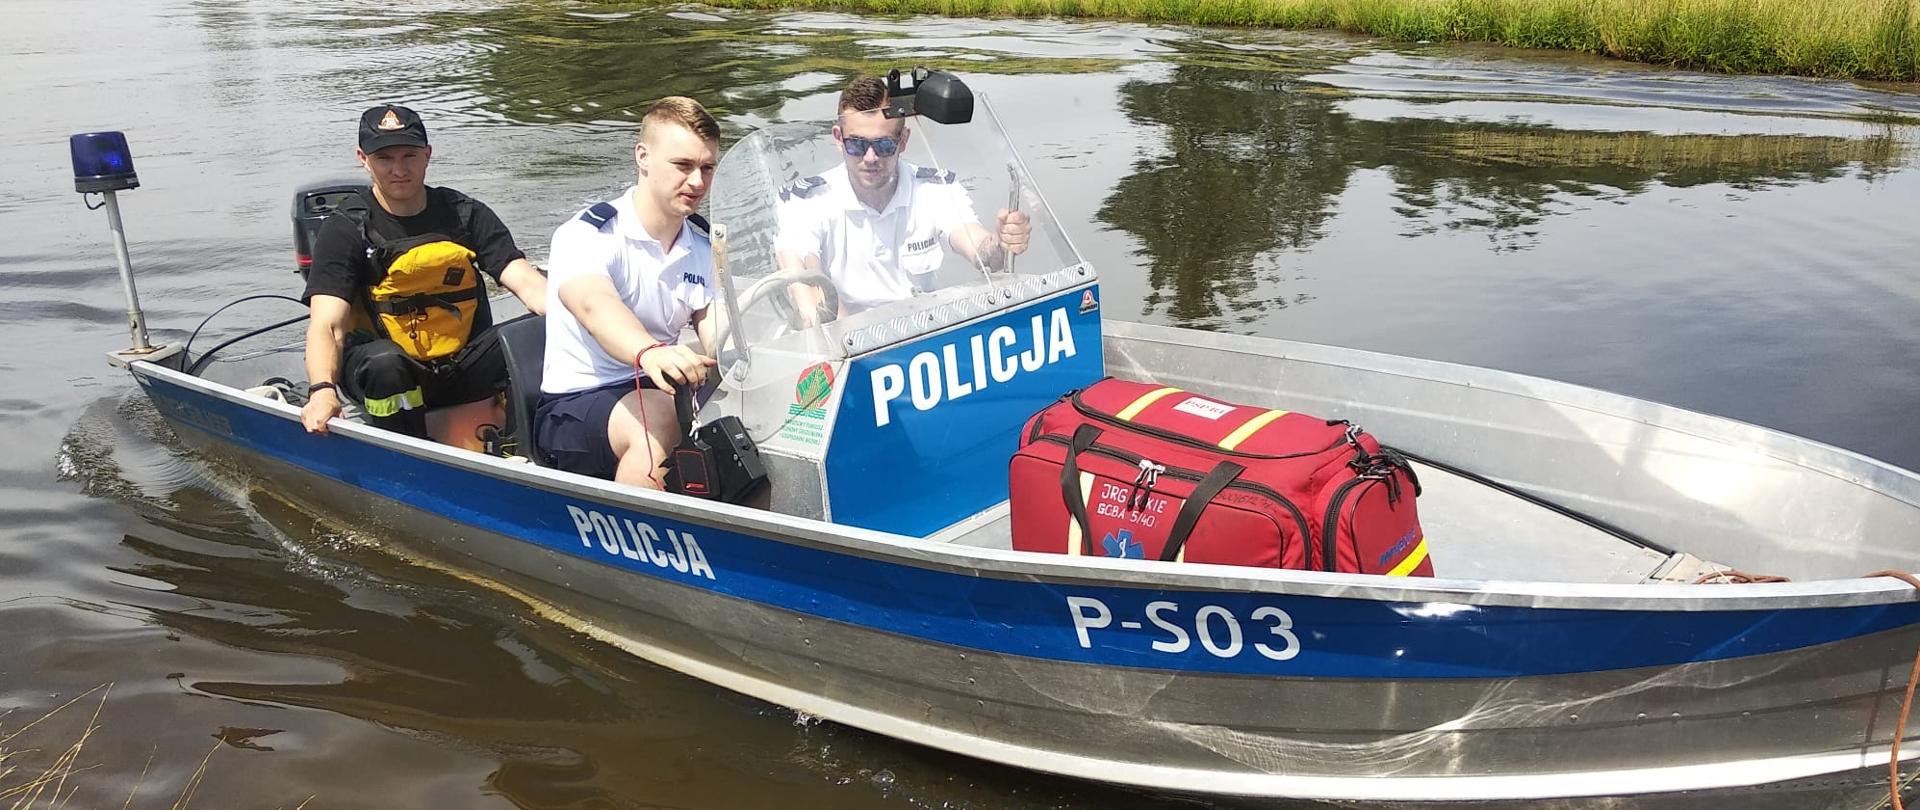 Policyjna łódka na zalewie "Antoniów" blisko nabrzeża, na pokładzie dwóch policjantów i strażak ze sprzętem do ratownictwa wodnego